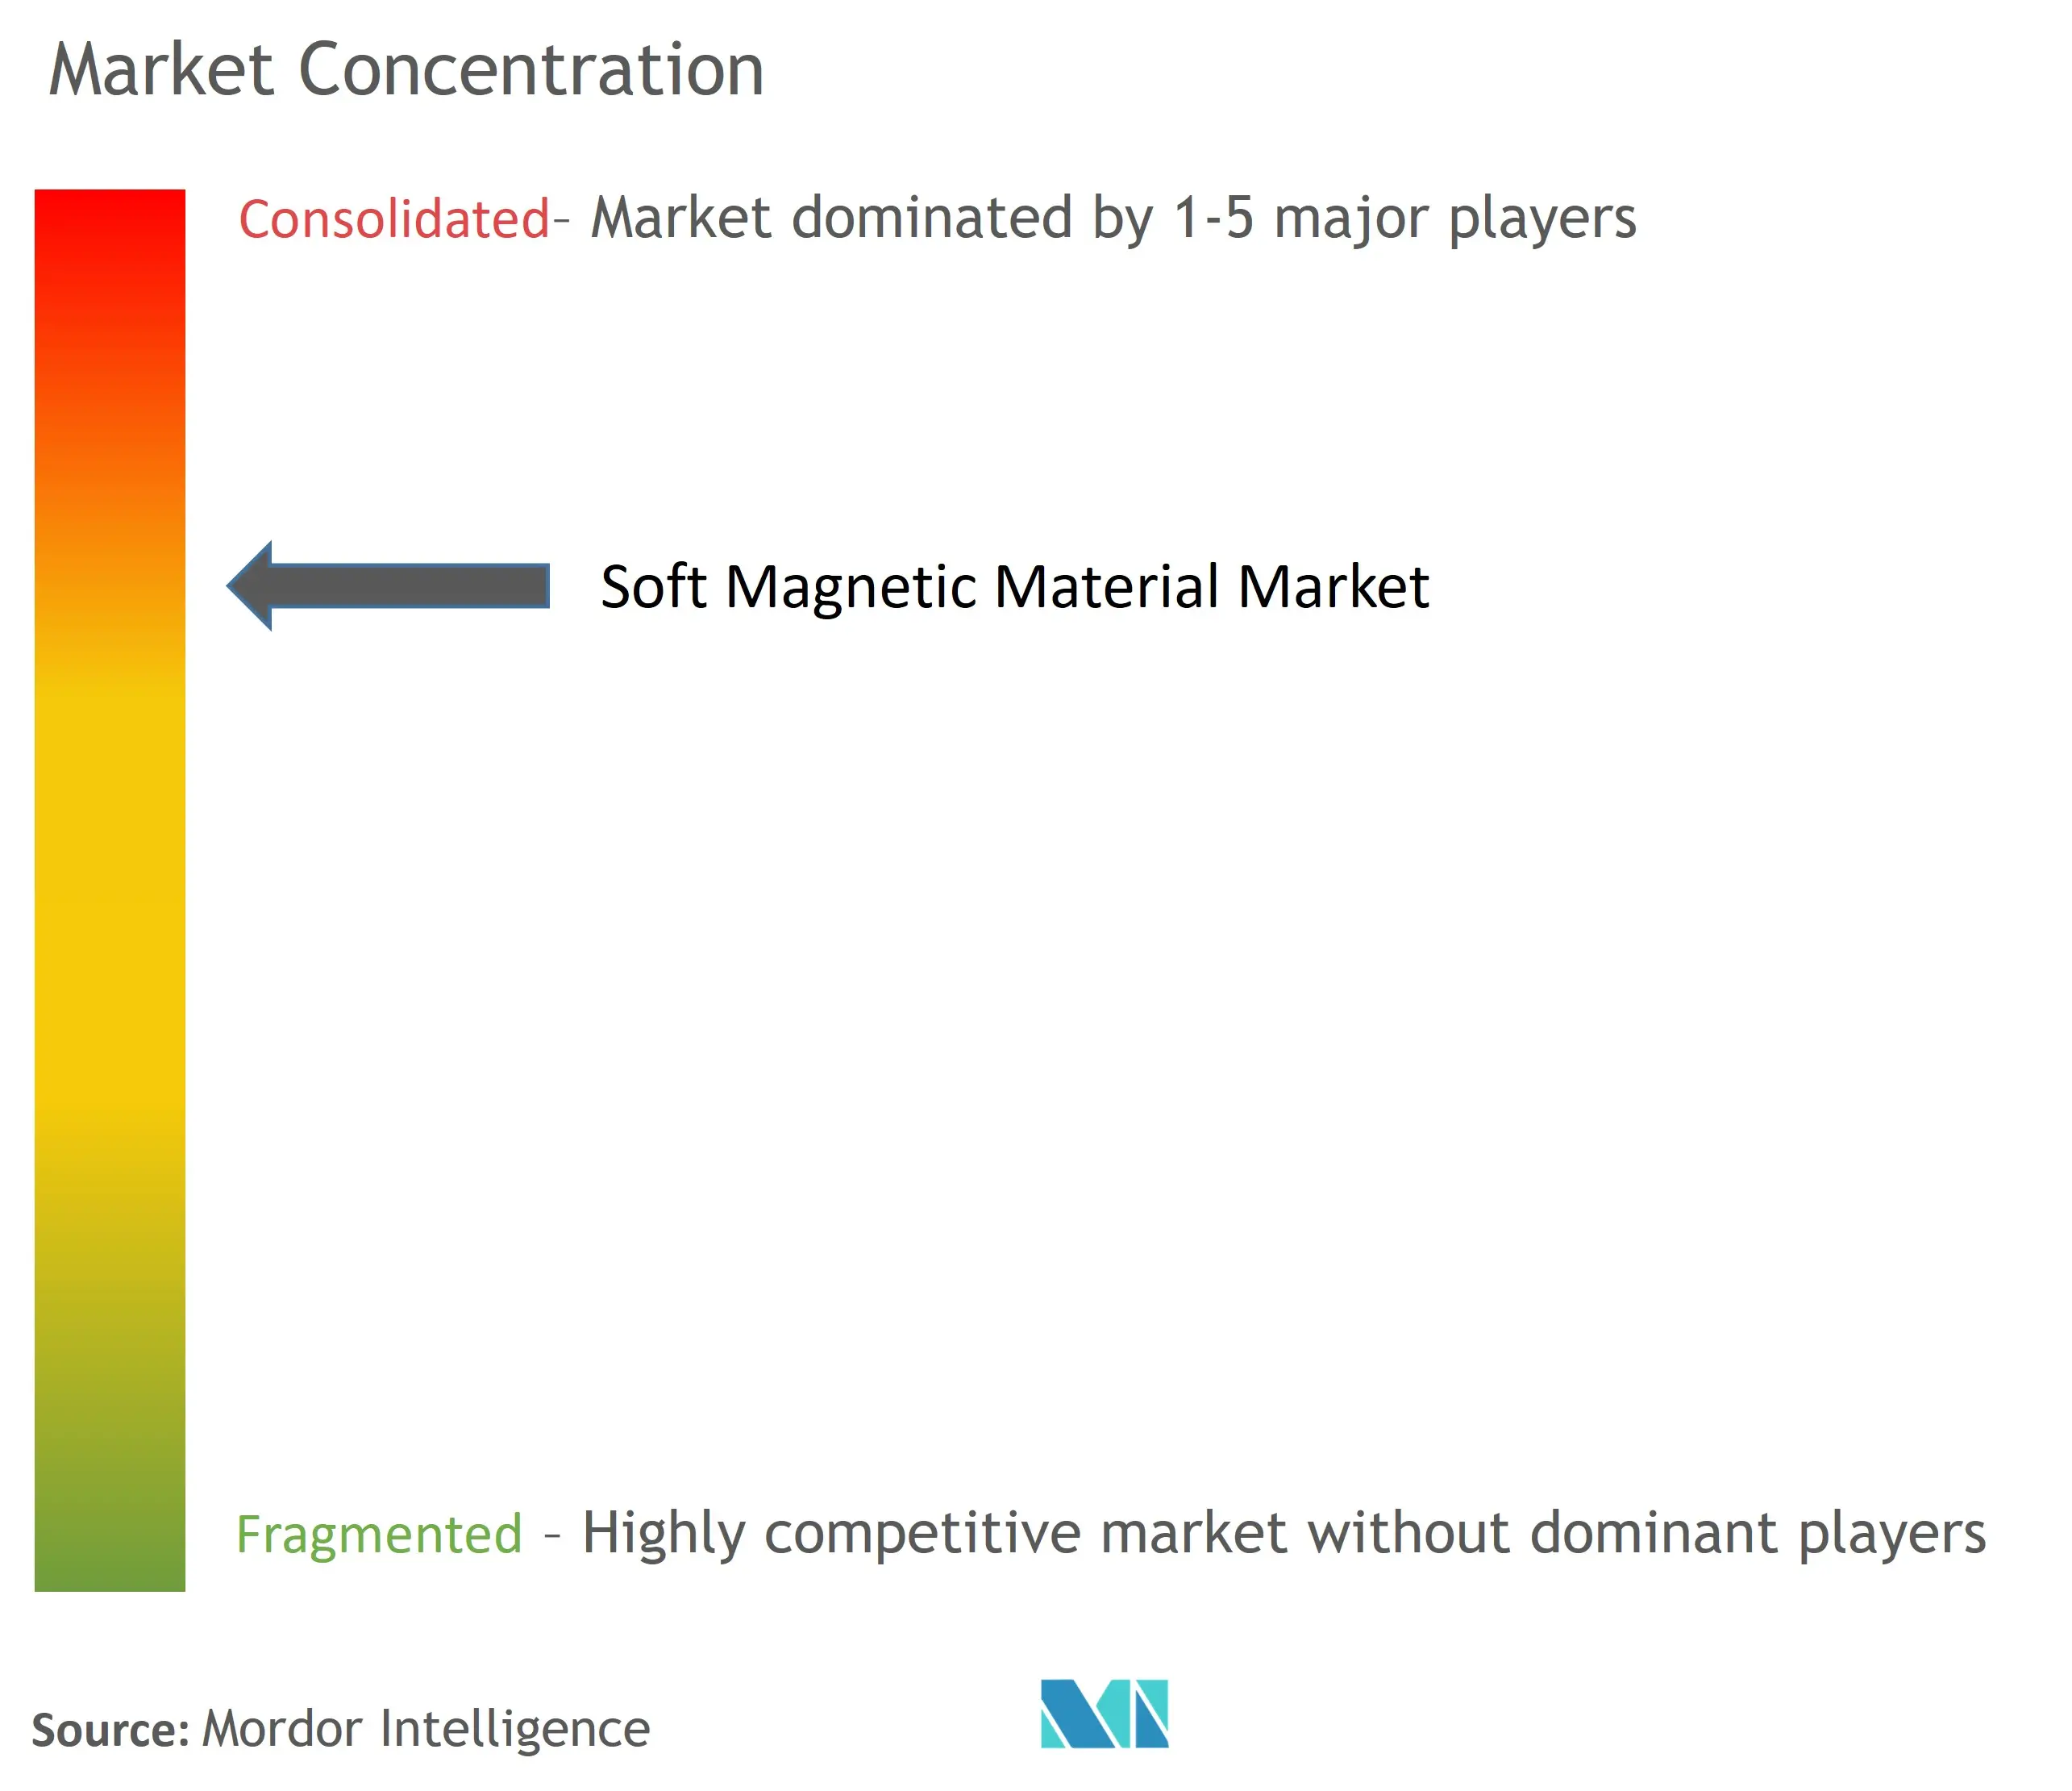 Soft Magnetic Material Market - Market Concentration.jpg